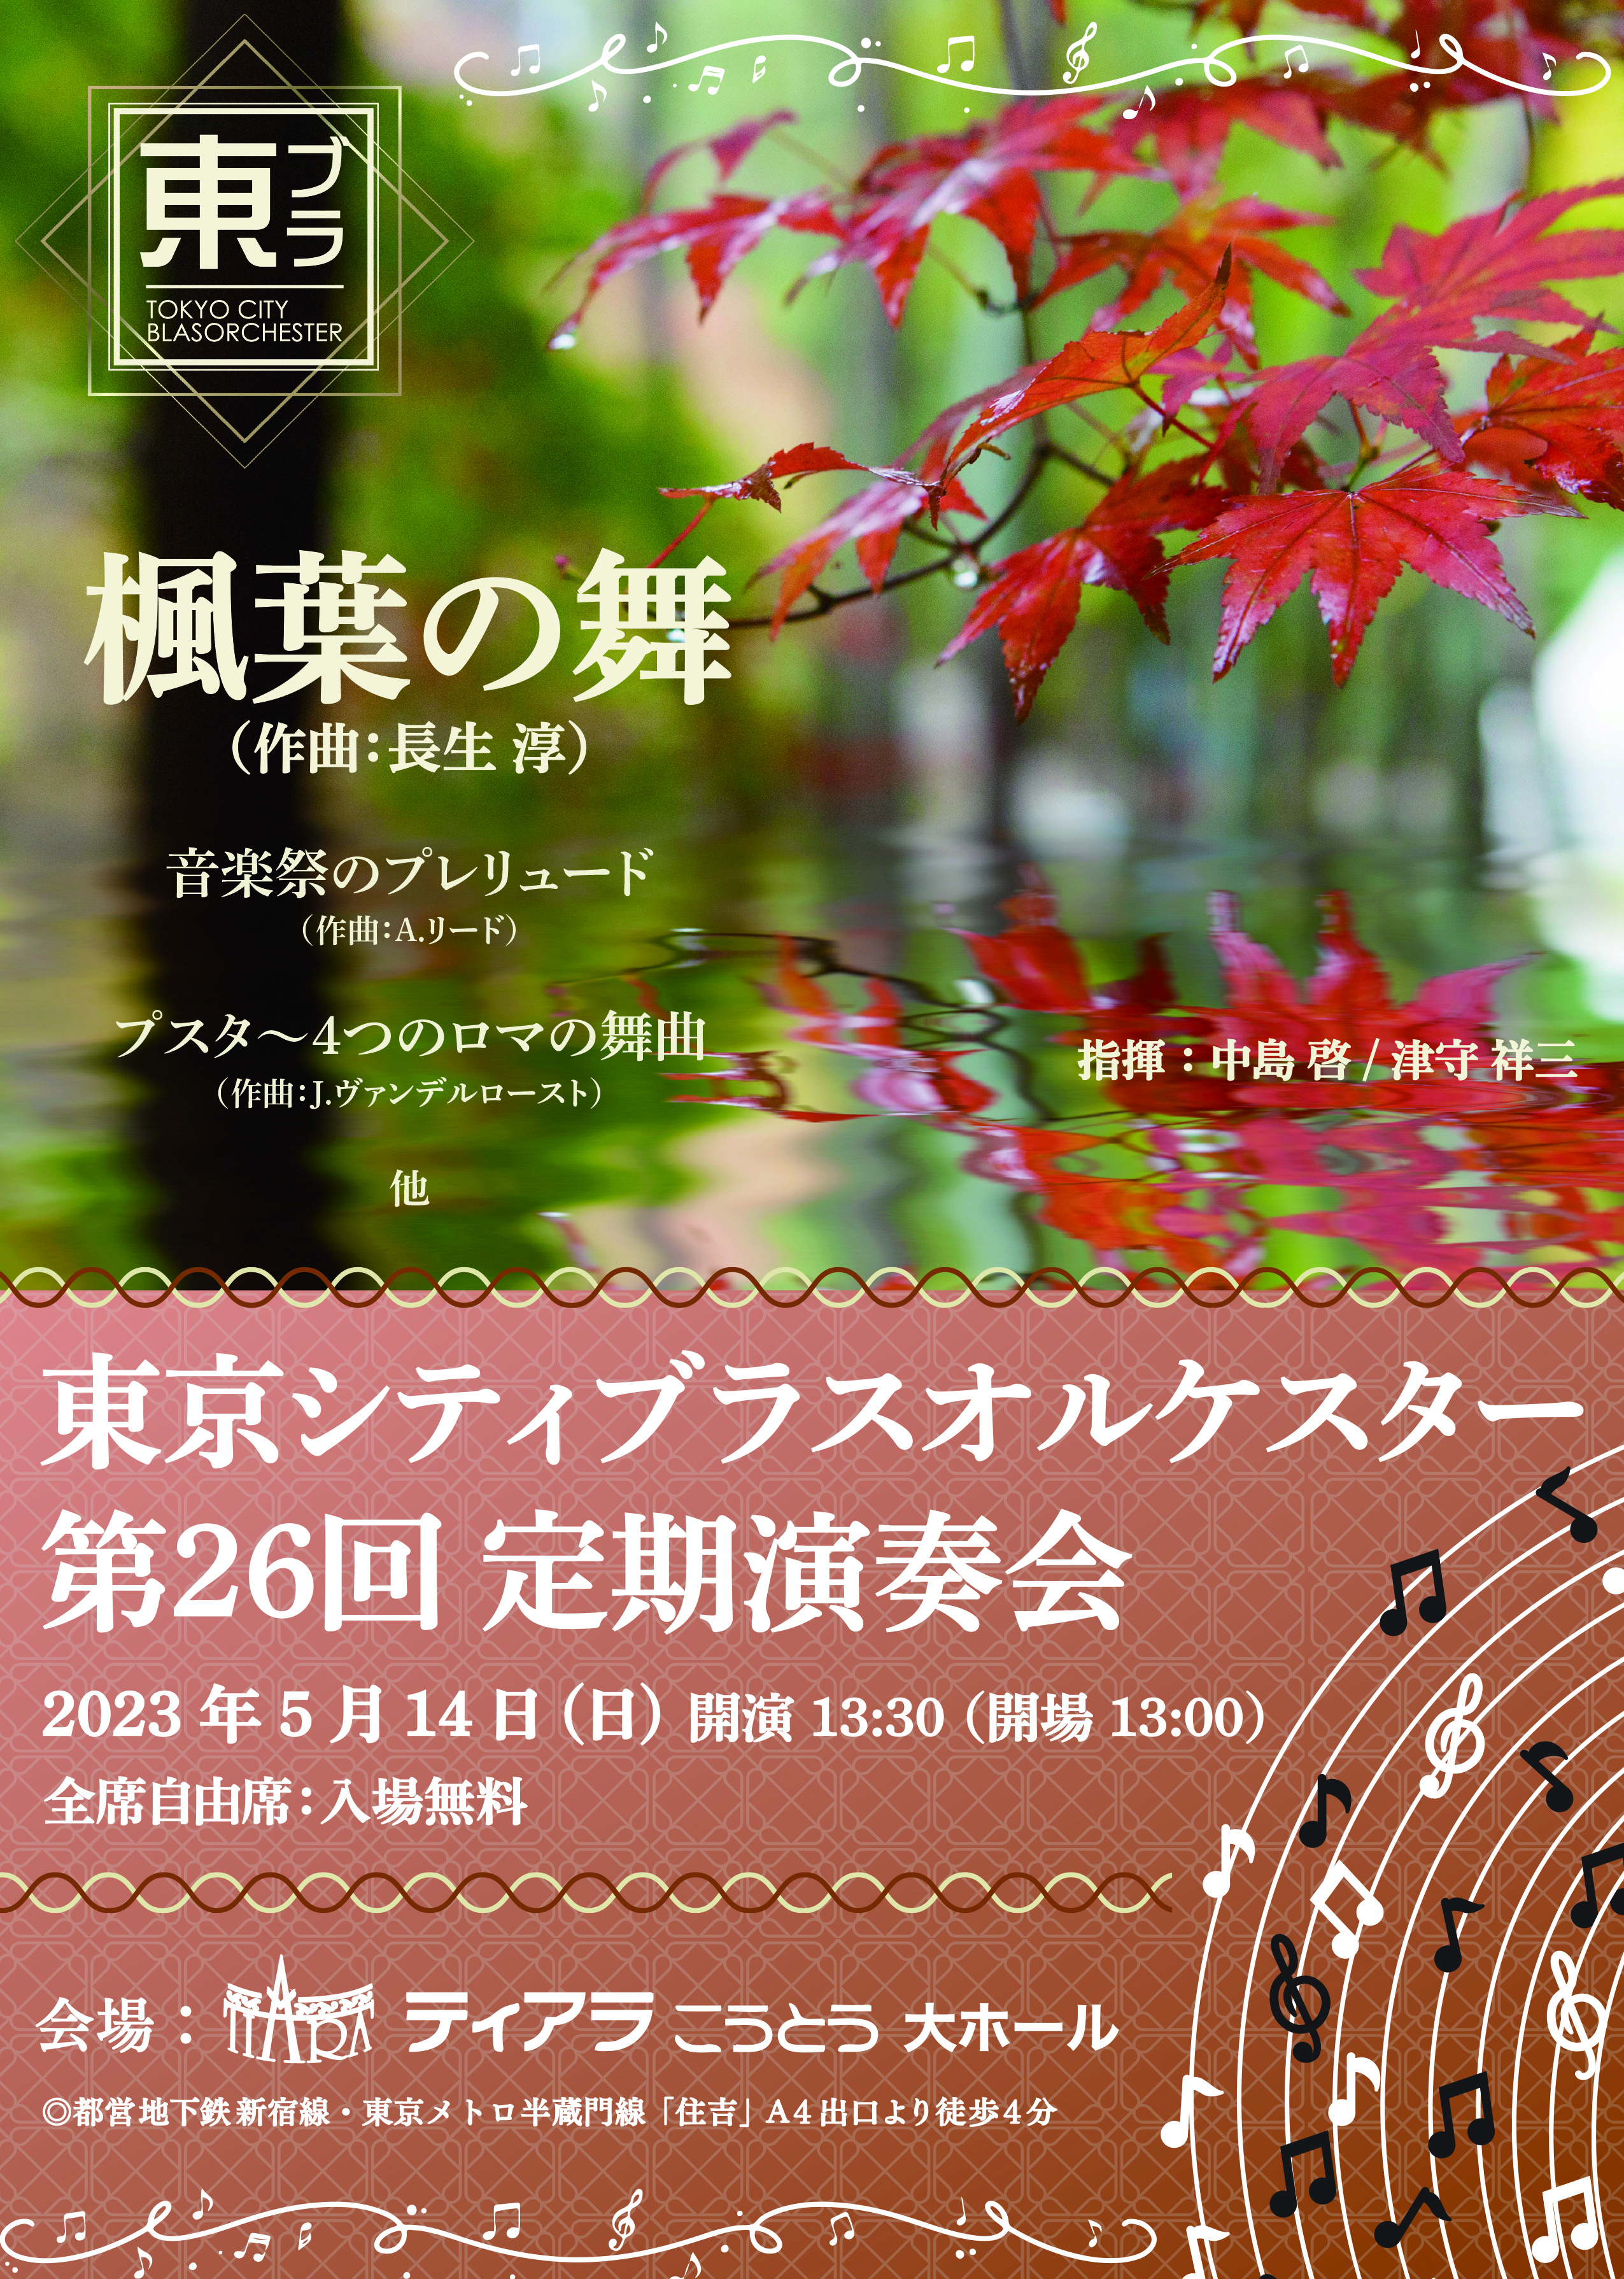 Tokyo City Brass Orchester 26th Regular Concert